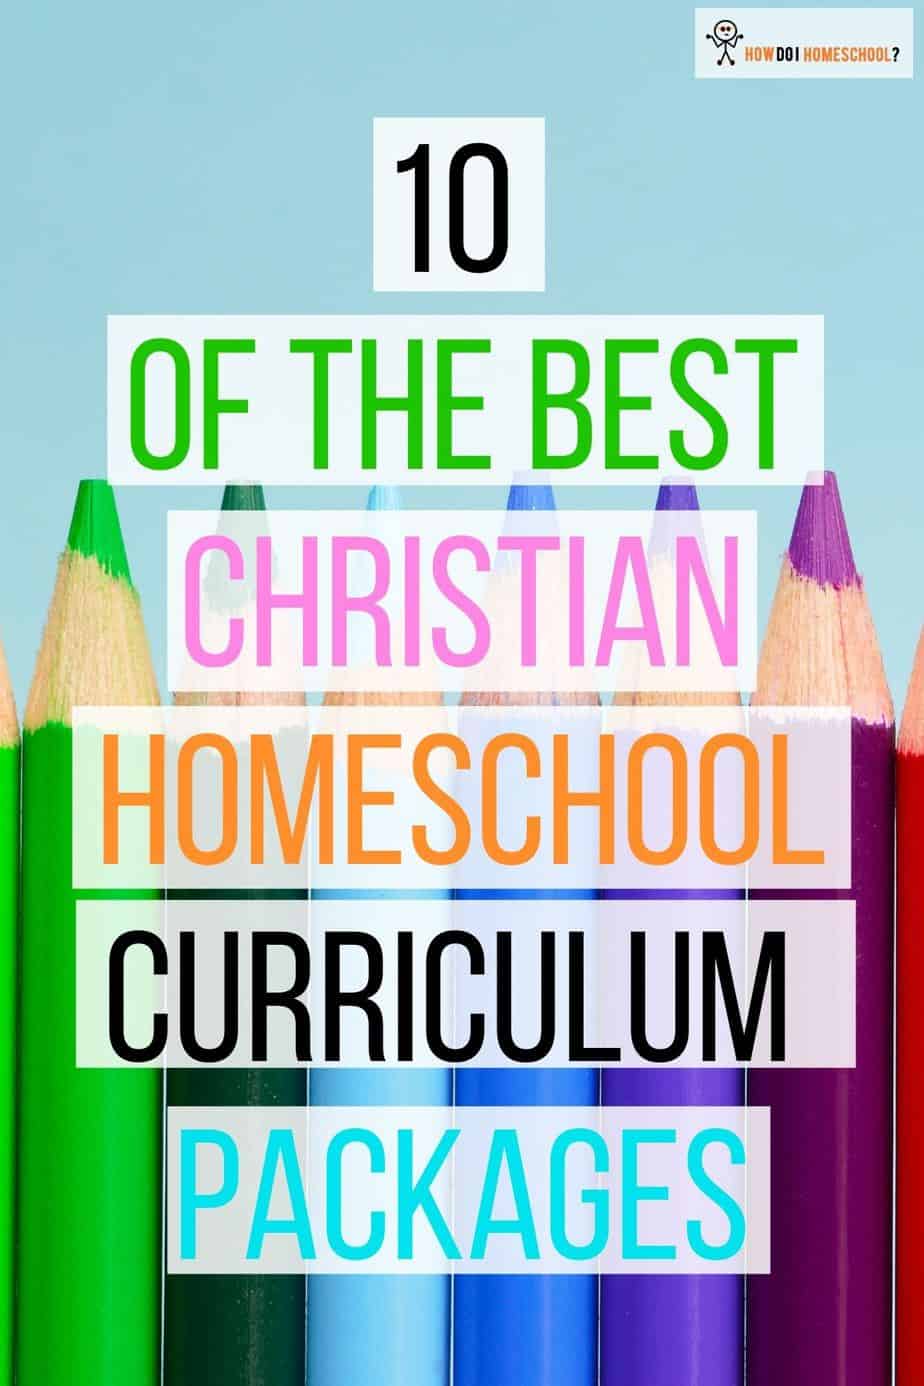 BEST Christian Homeschool Curriculum Packages Reviewed